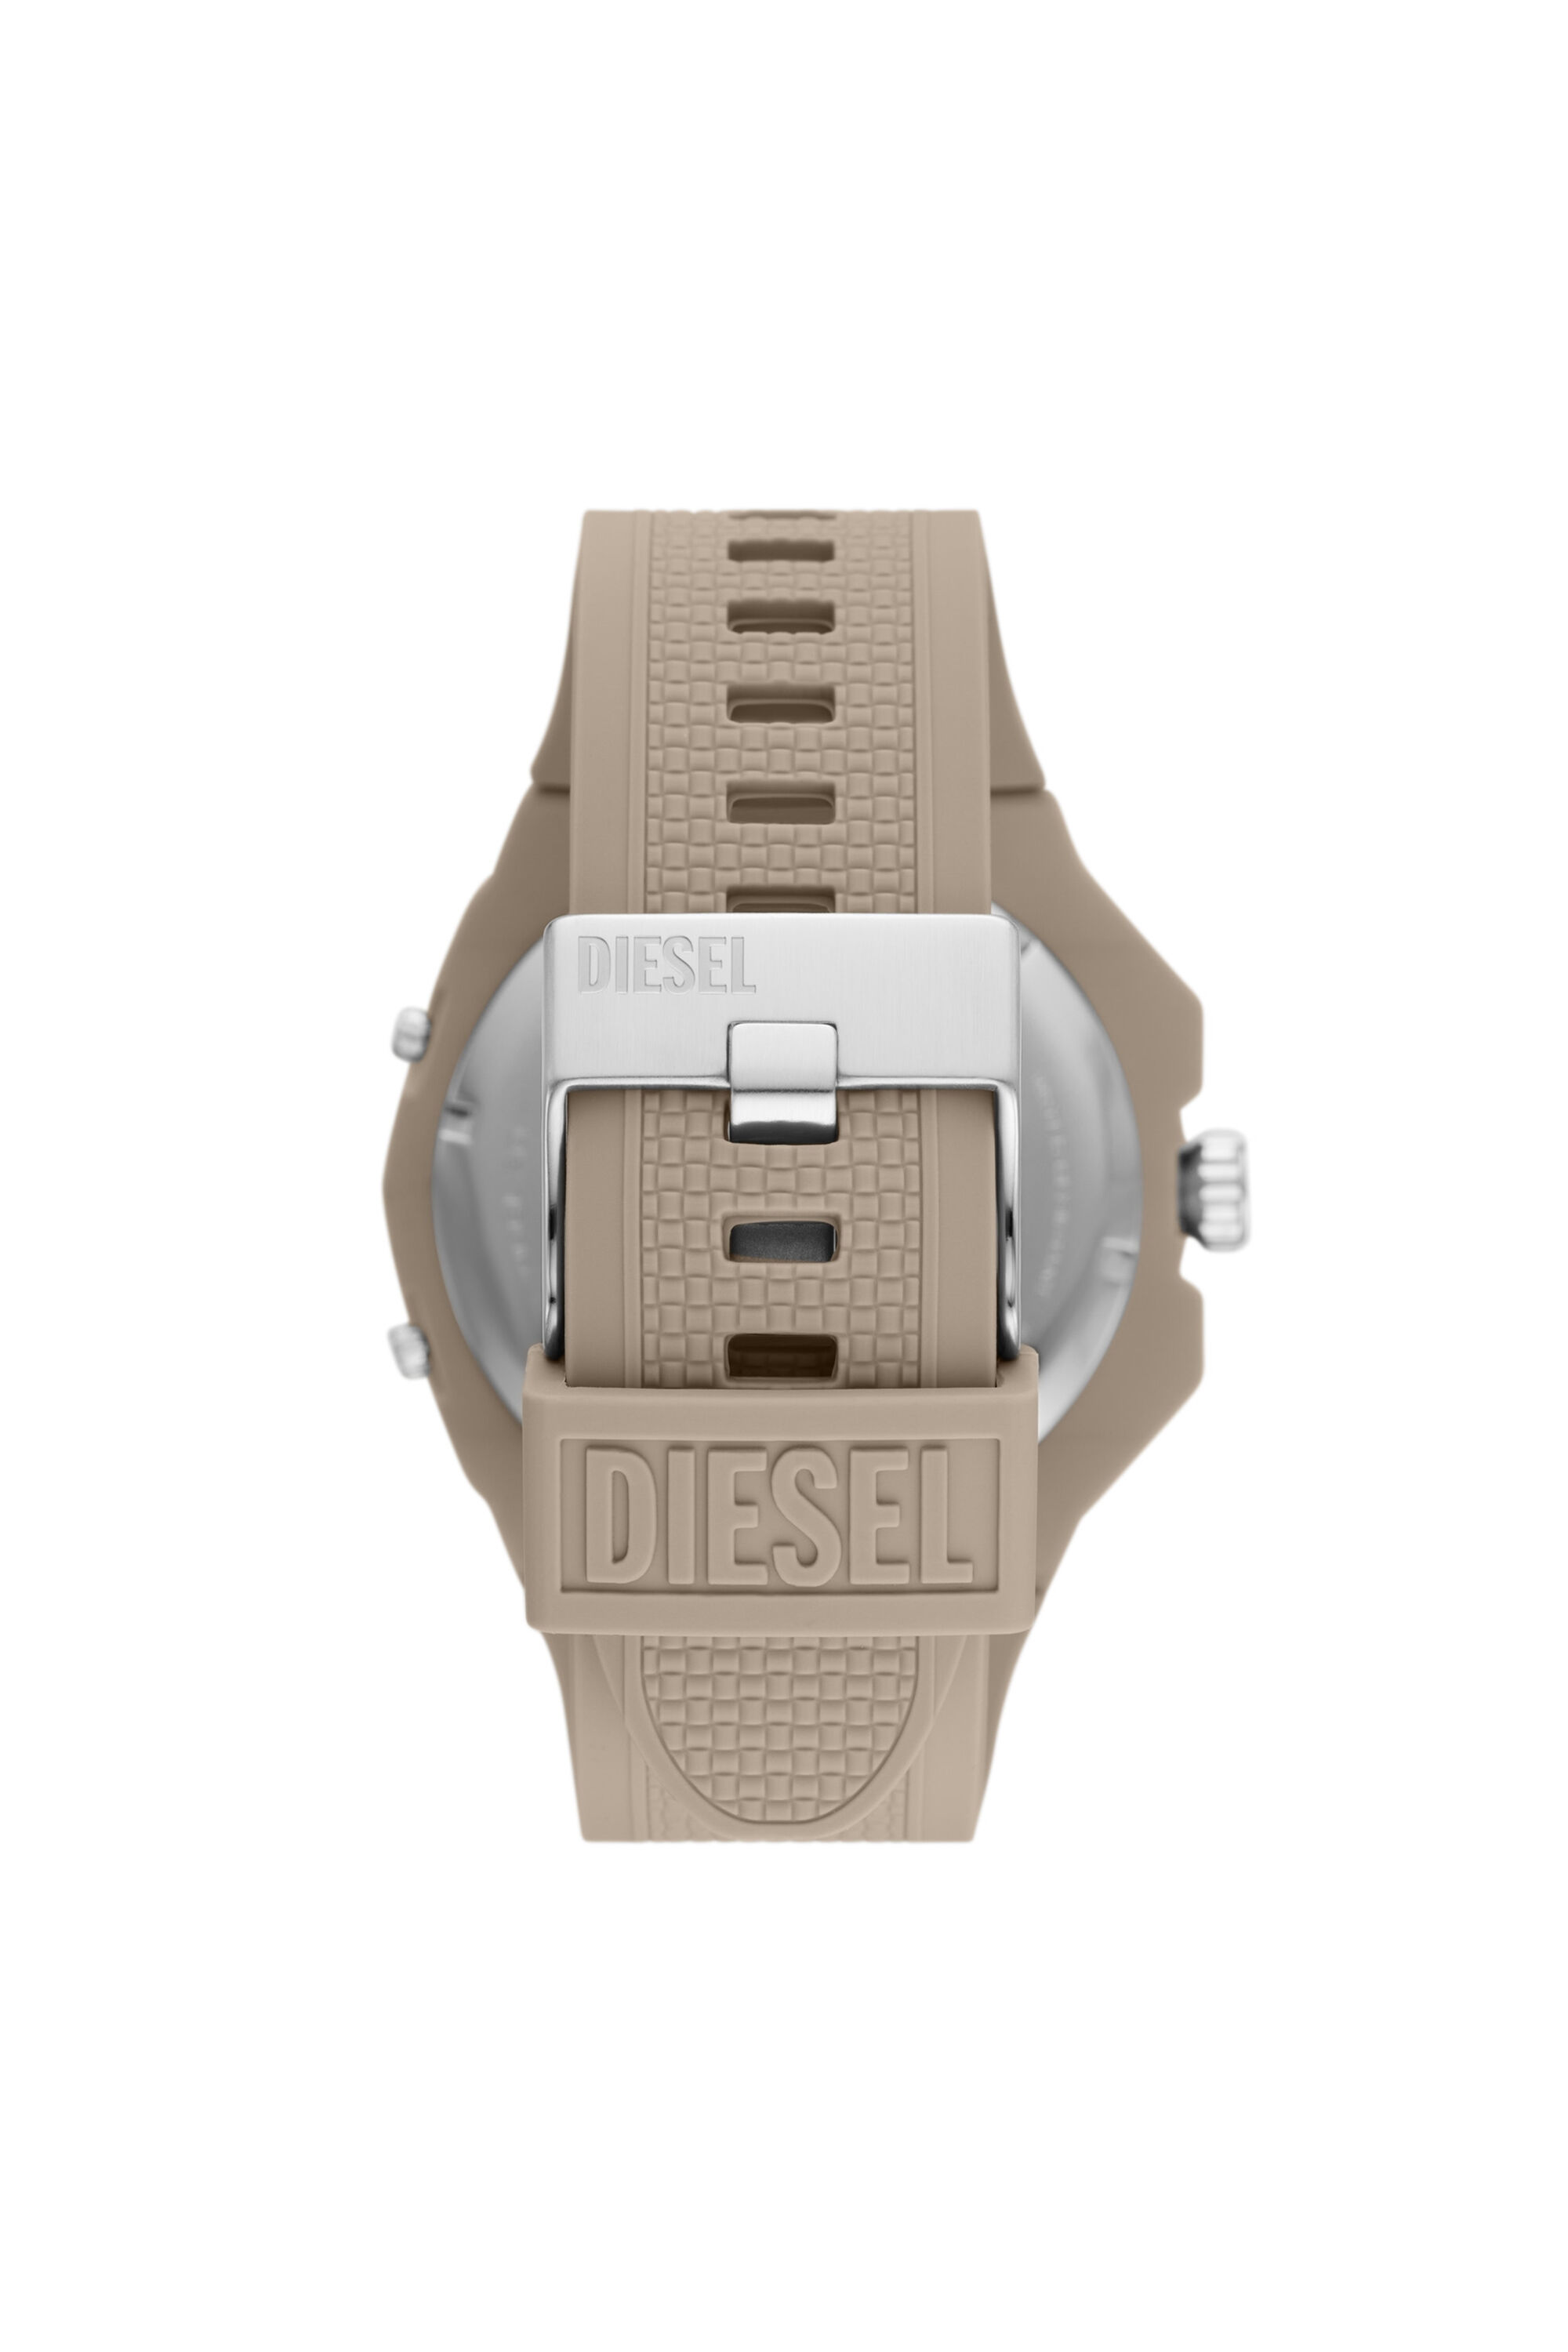 Diesel - DZ1990,  - Image 2